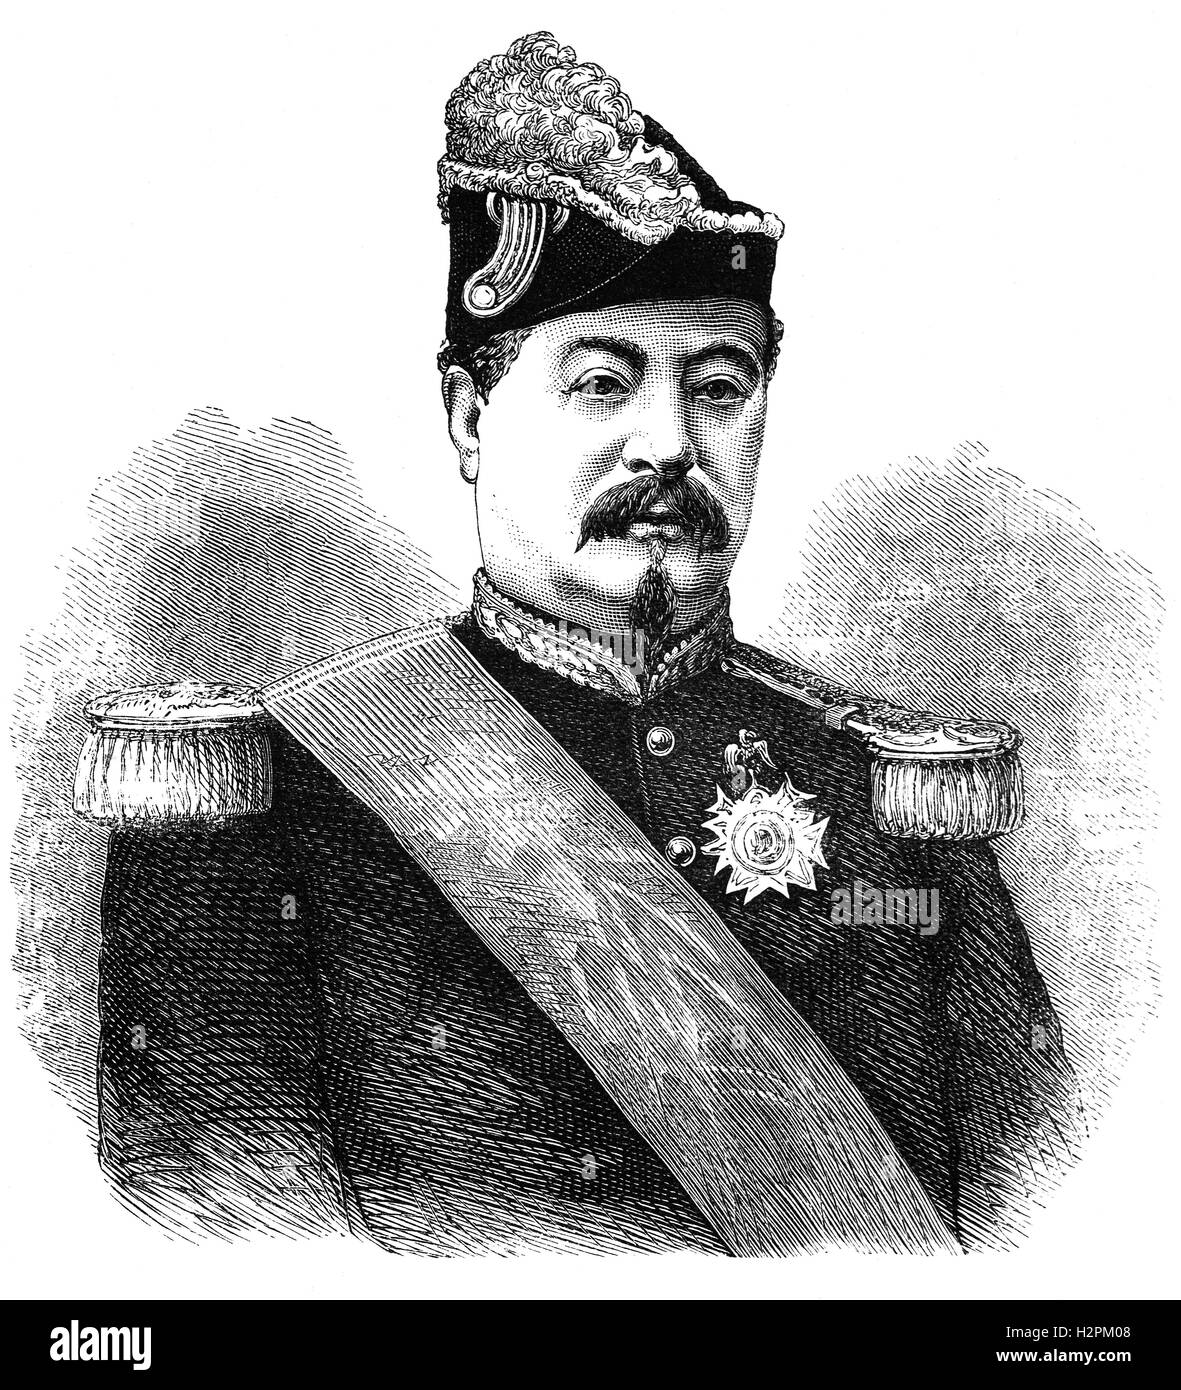 François Achille Bazaine ( 1811 - 1888) è stato un generale francese e dal 1864, un Maresciallo di Francia che si arrese l'ultimo organizzato esercito francese ai Prussiani durante la guerra franco-prussiana. Foto Stock